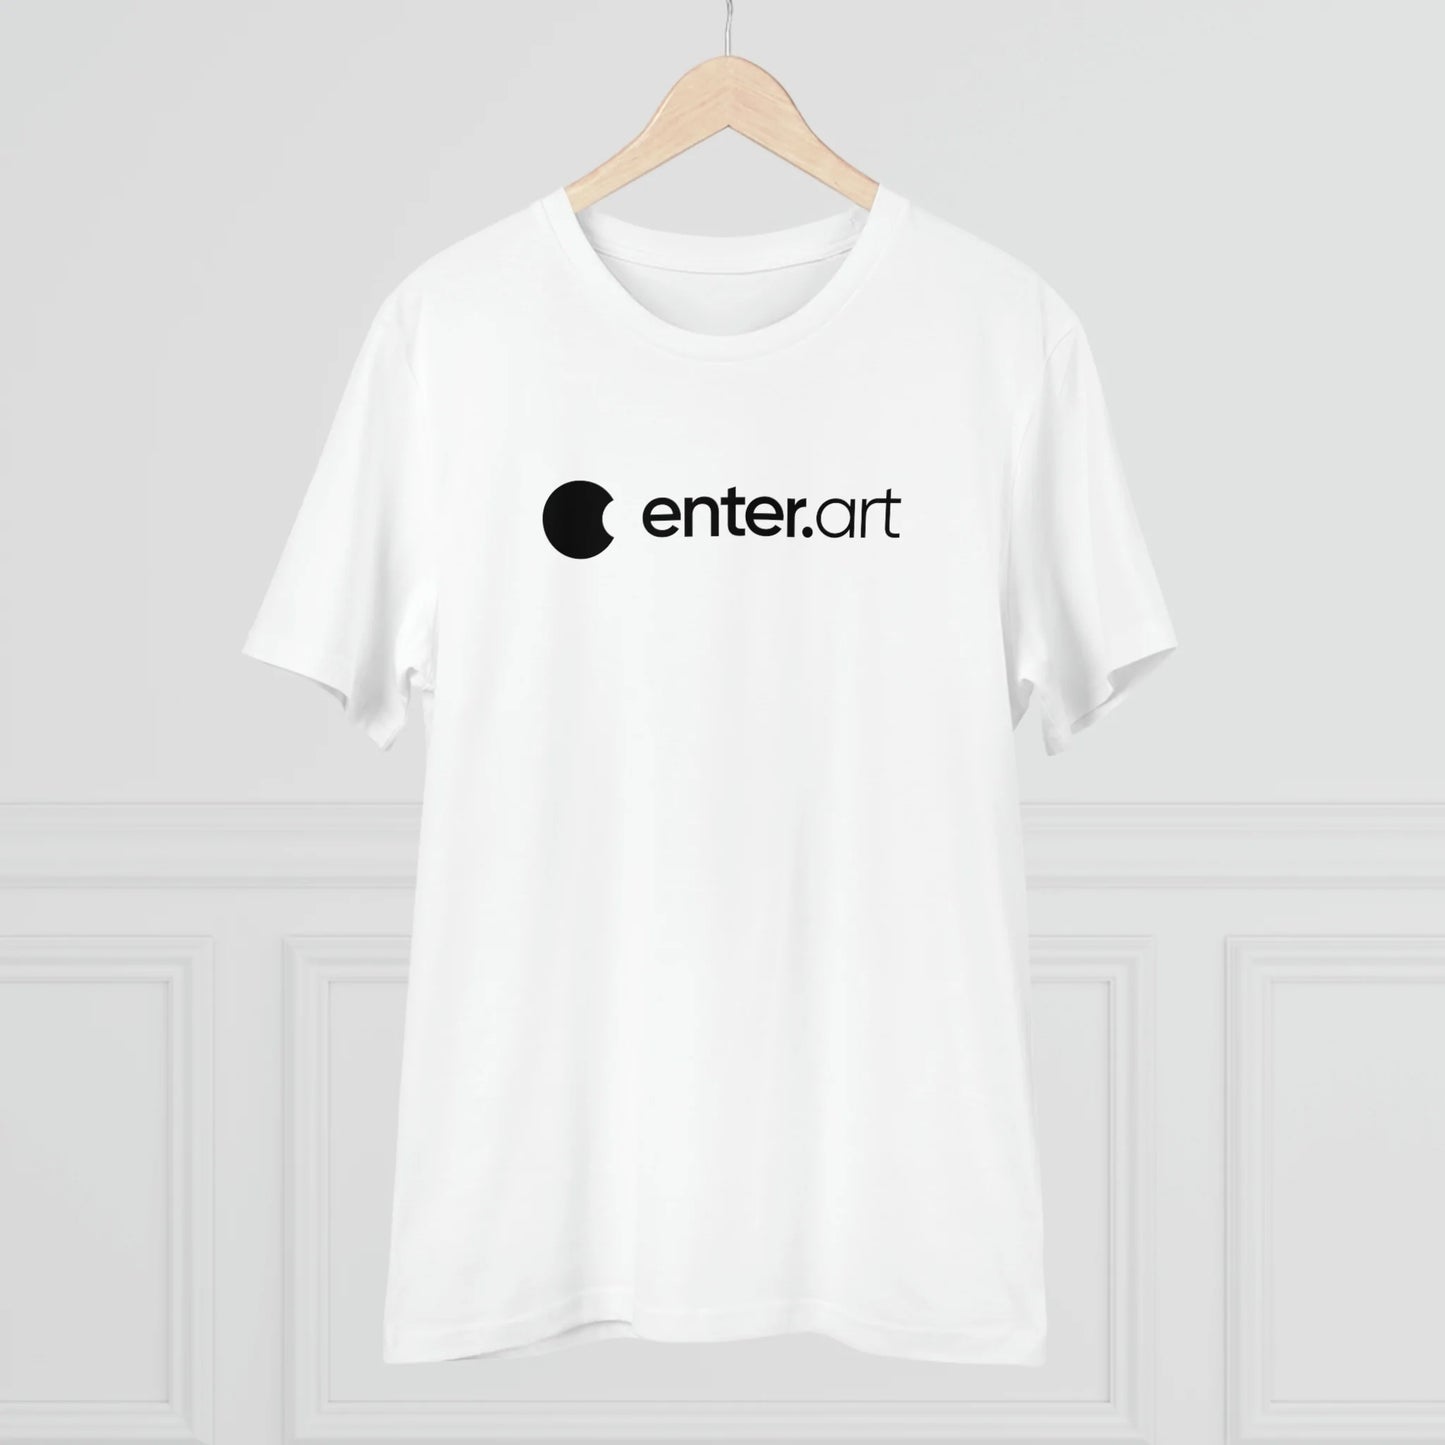 enter.art x Ifeelslick - White t-shirt